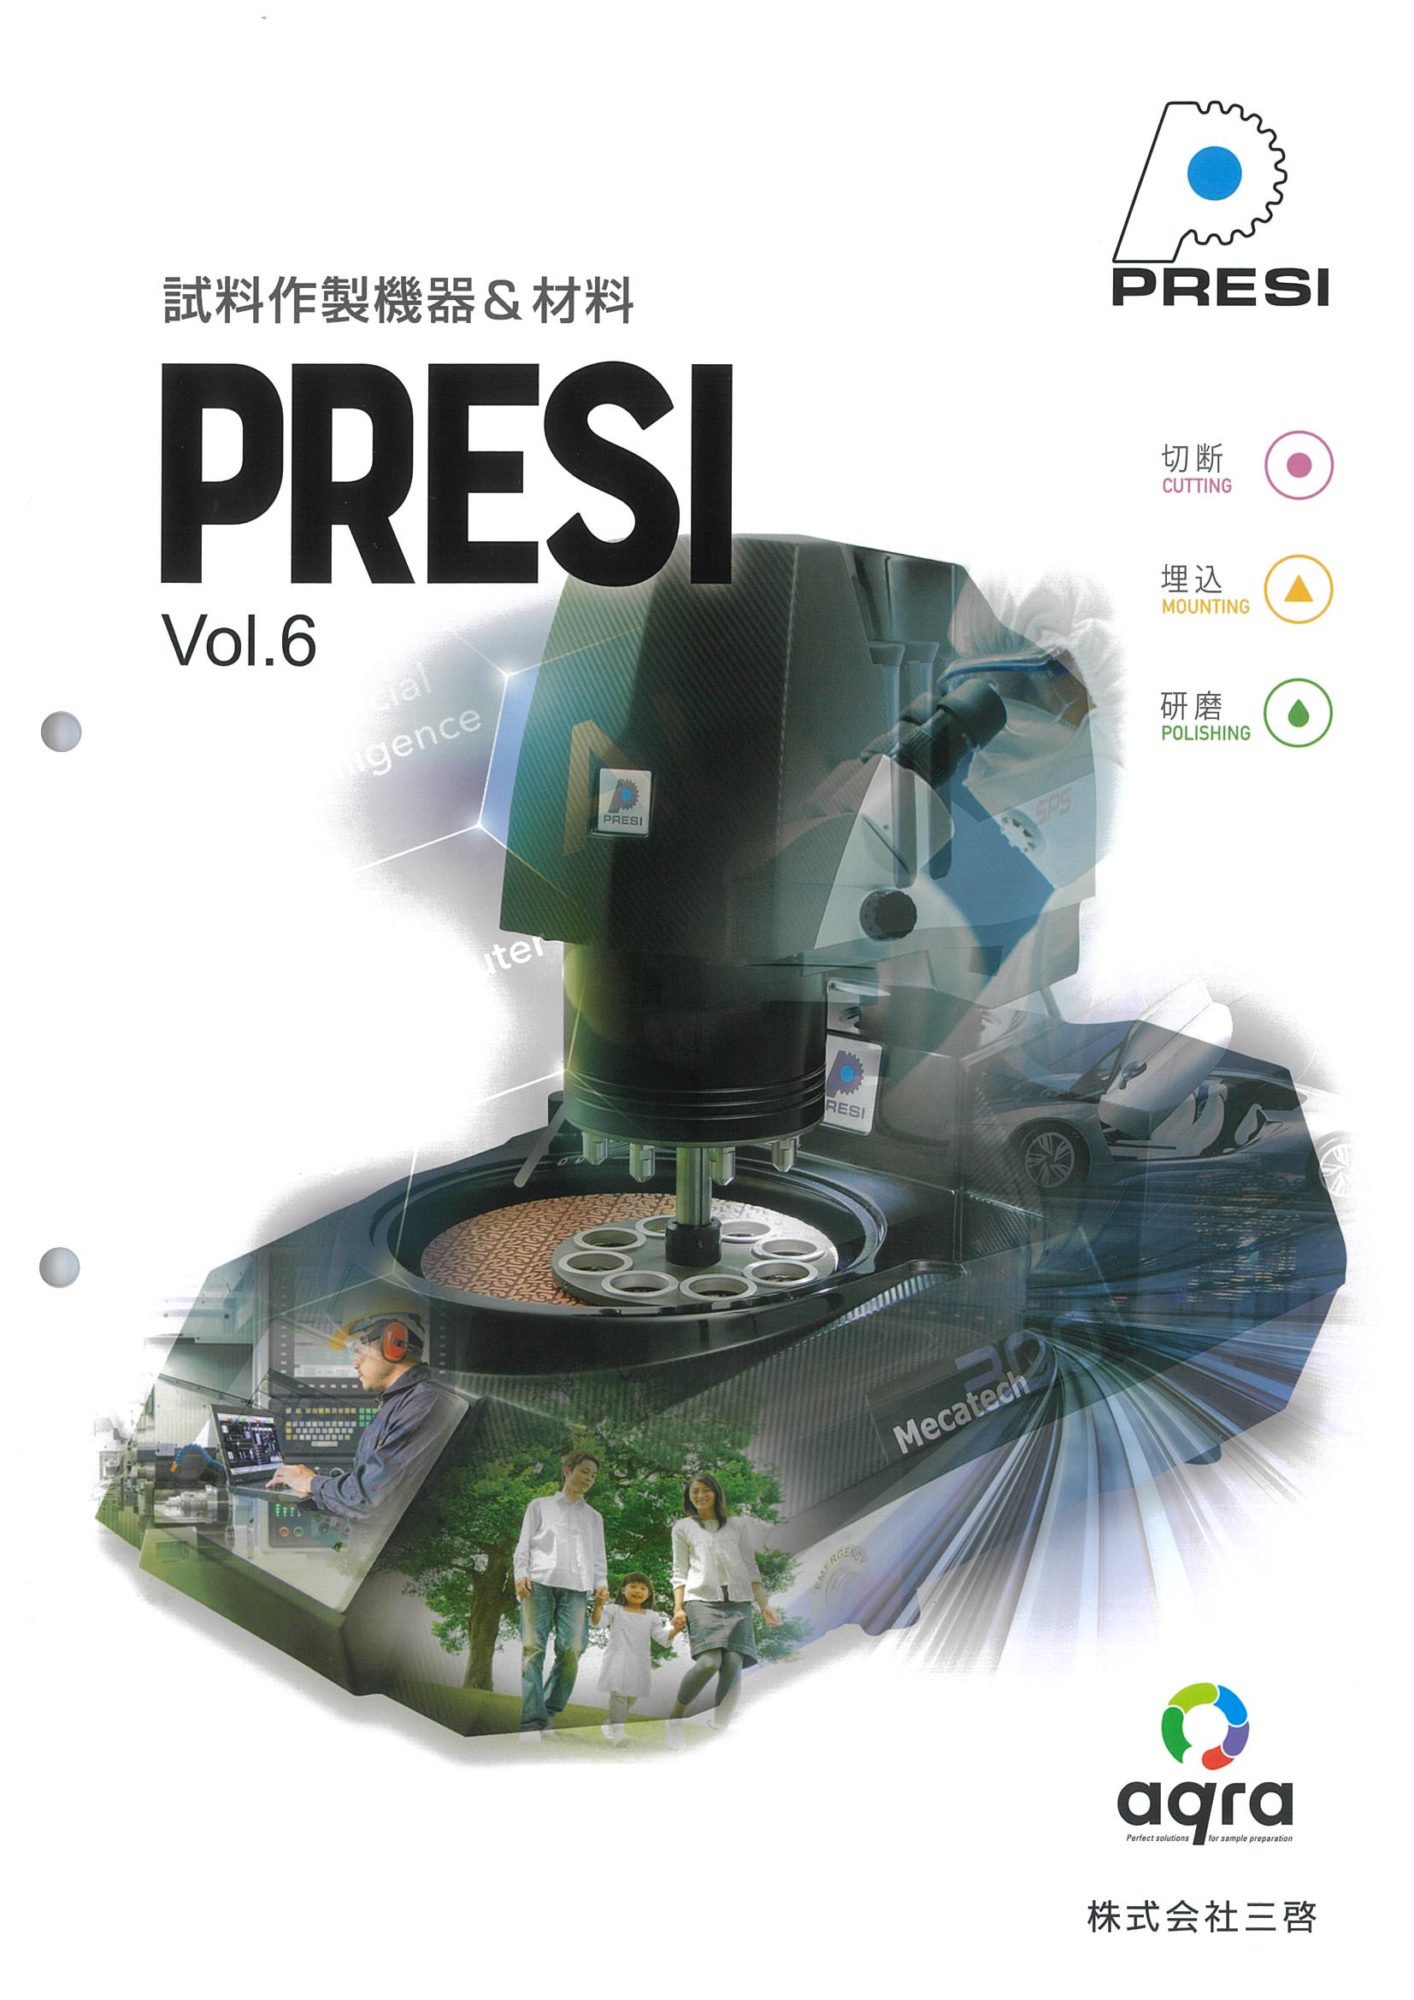 試料作製機器&材料 PRESI Vol.6